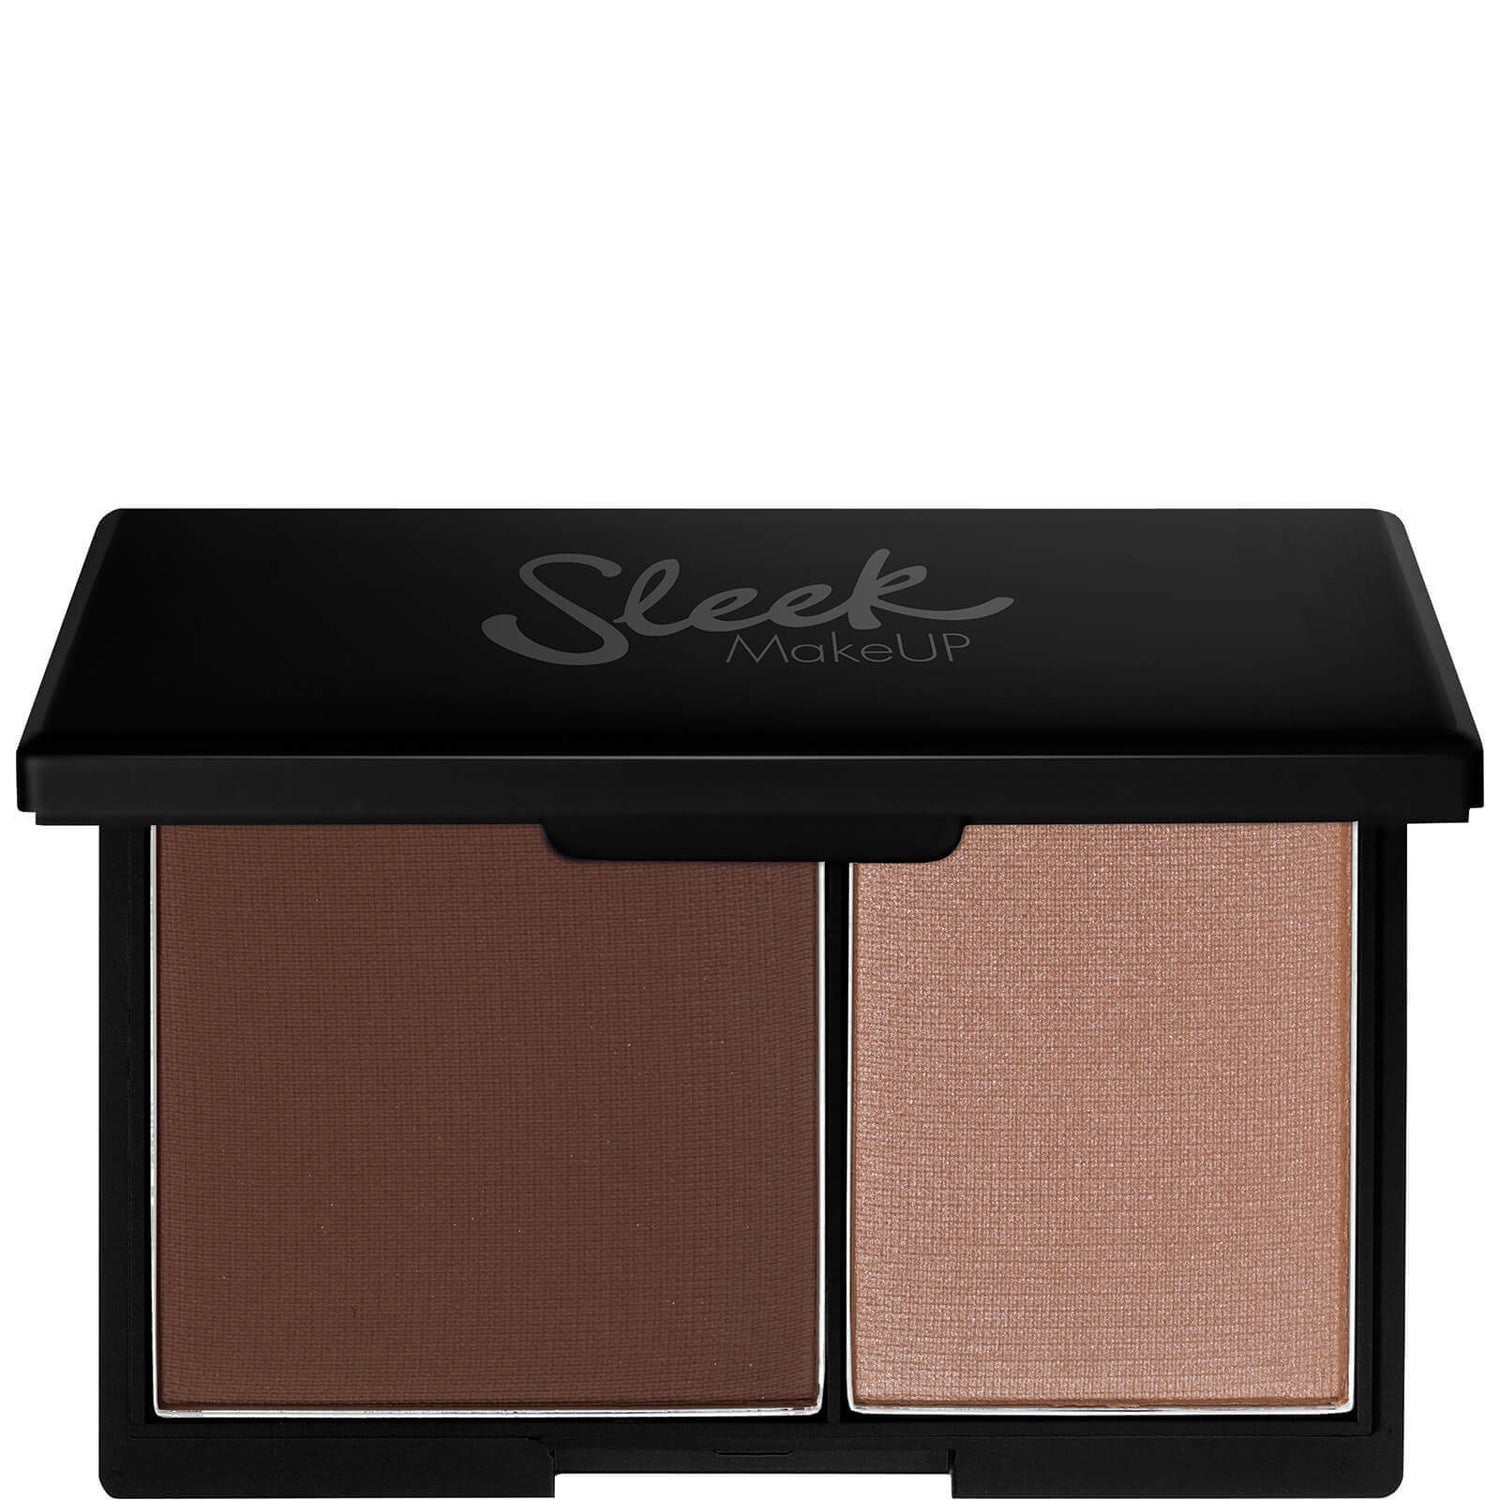 Sleek MakeUP Face Contour Kit - Medium 13 g